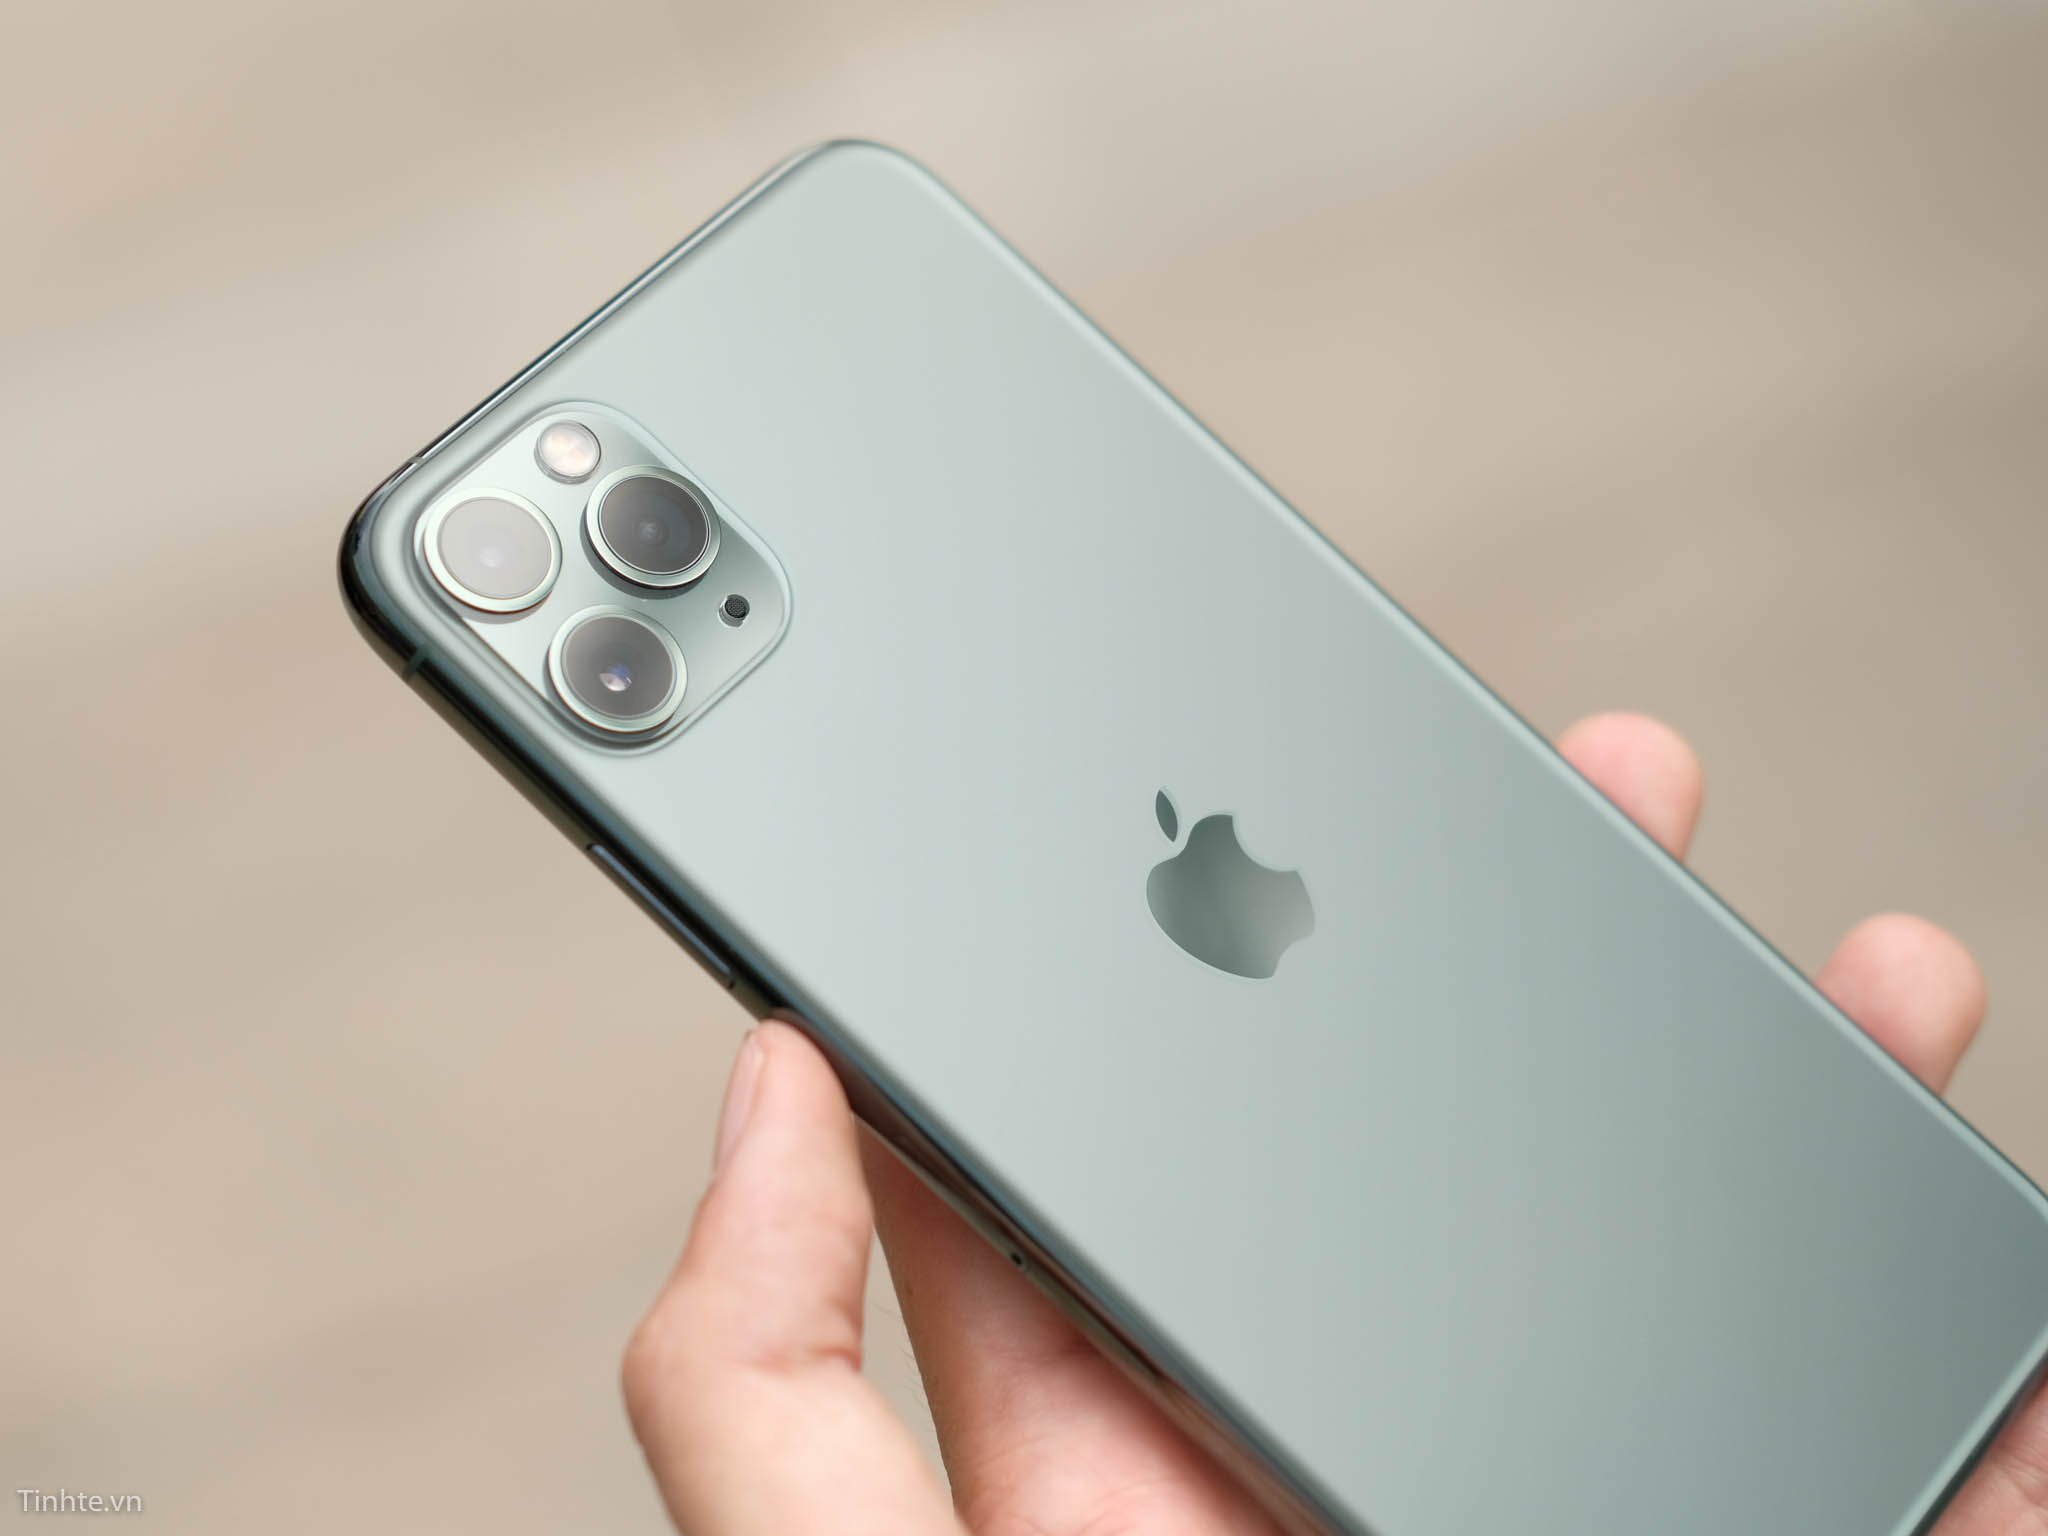 Máy Cũ Còn Ngon: iPhone 11 Pro Max sau hơn 2 năm ra mắt – Thiết kế chưa lỗi  mốt, hiệu năng cực ngon và pin dùng lâu - TECHONE